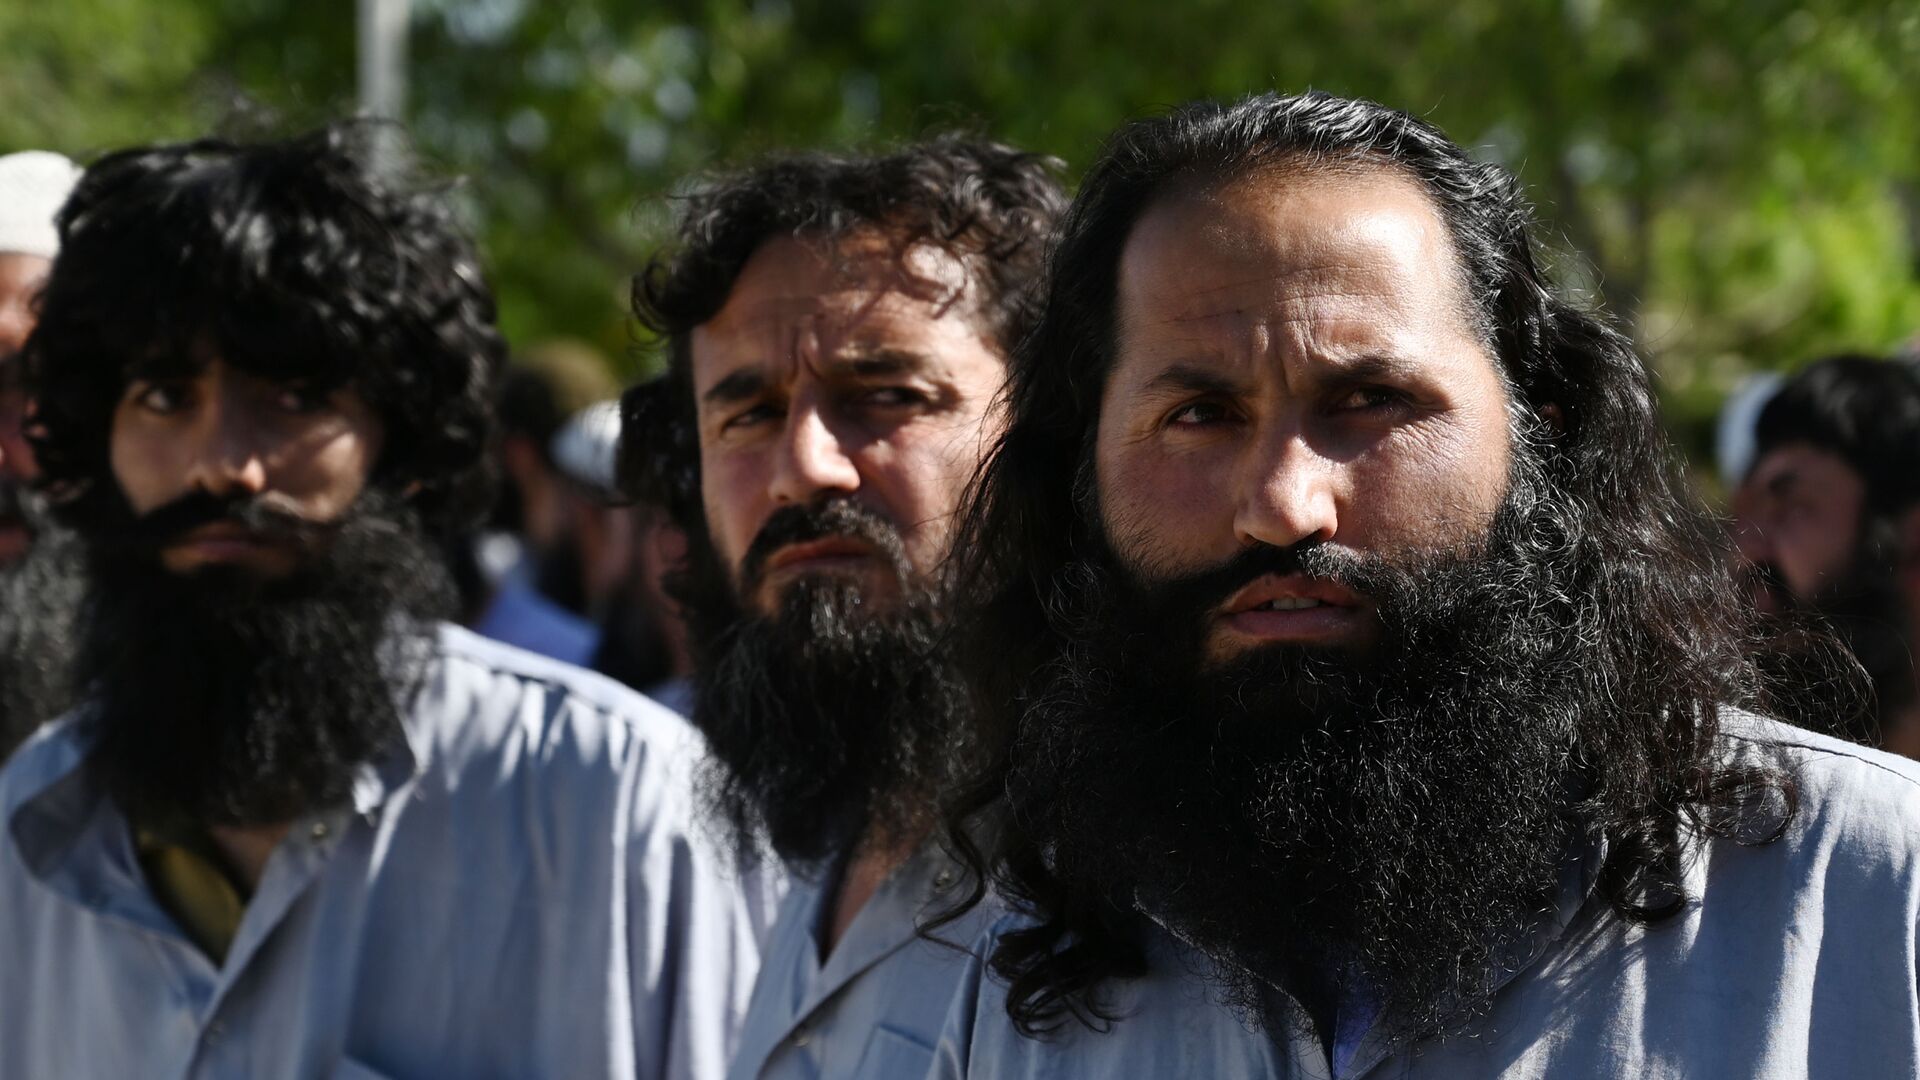 Заключенные талибы во время их освобождения из тюрьмы Баграм, Афганистан - Sputnik Таджикистан, 1920, 15.04.2021